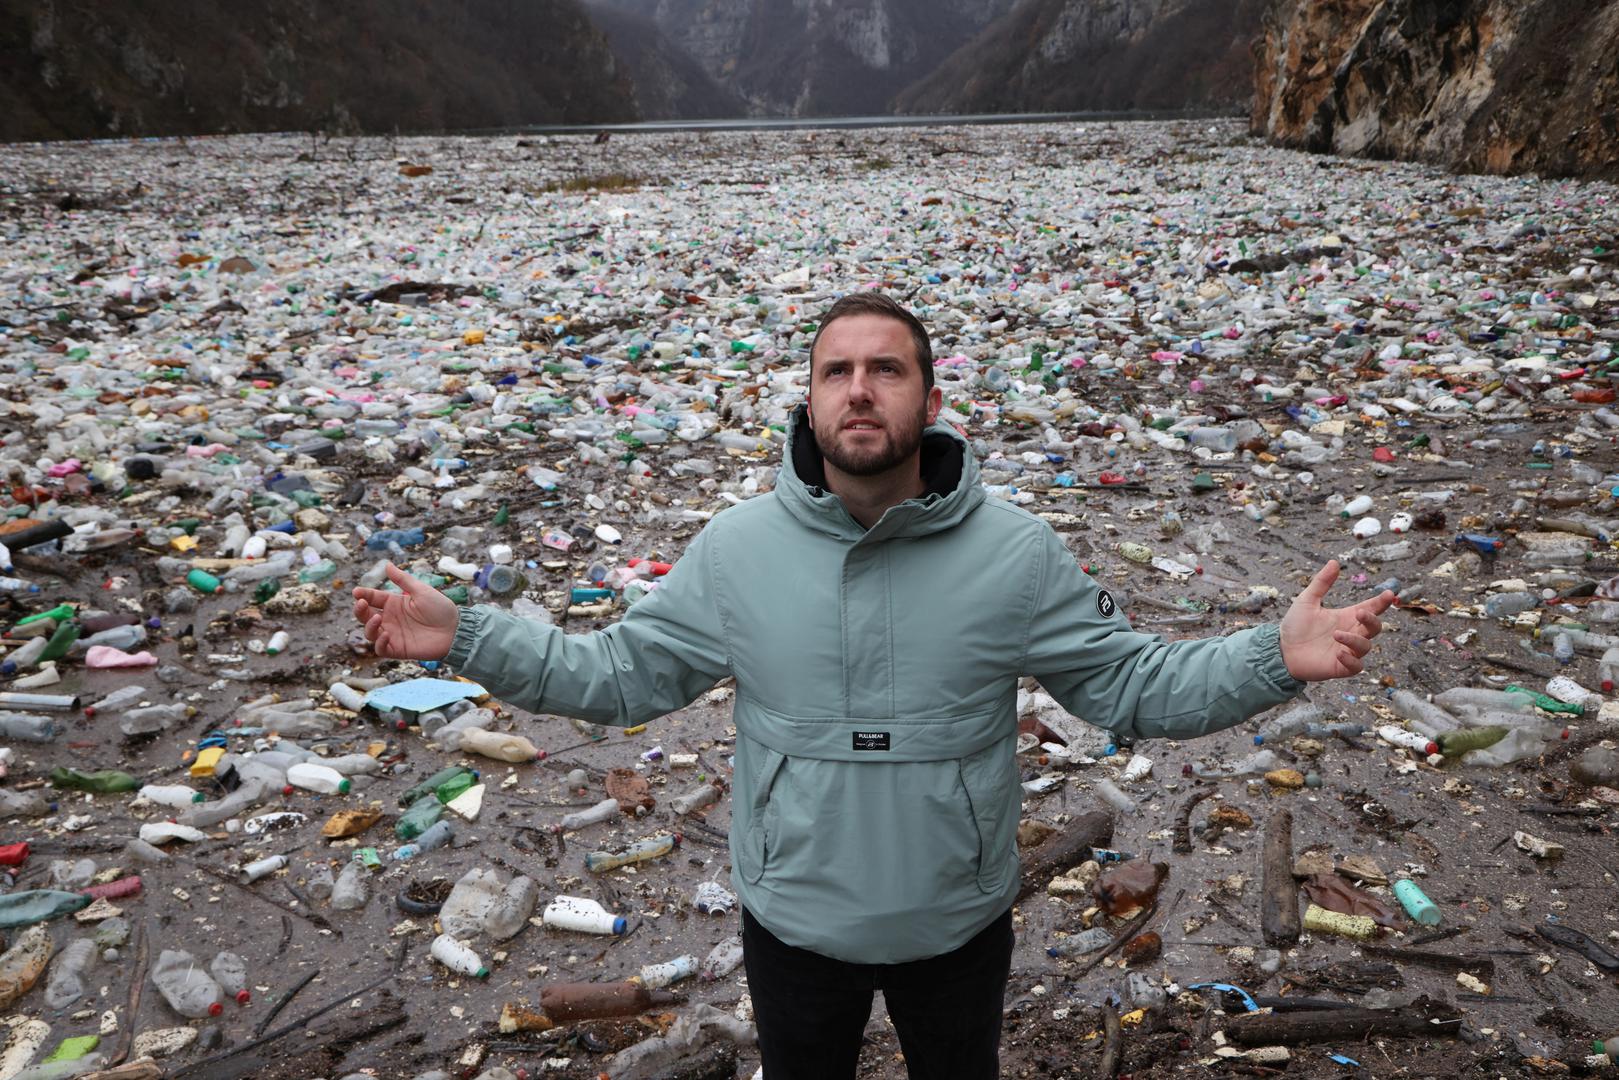 Dejan Furtula iz Udruge za zaštitu okoliša Eko centar Višegrad kazao je da se radi o oko 5.000 kubnih metara različitog otpada, a takva situacija se ponavlja svake godine.